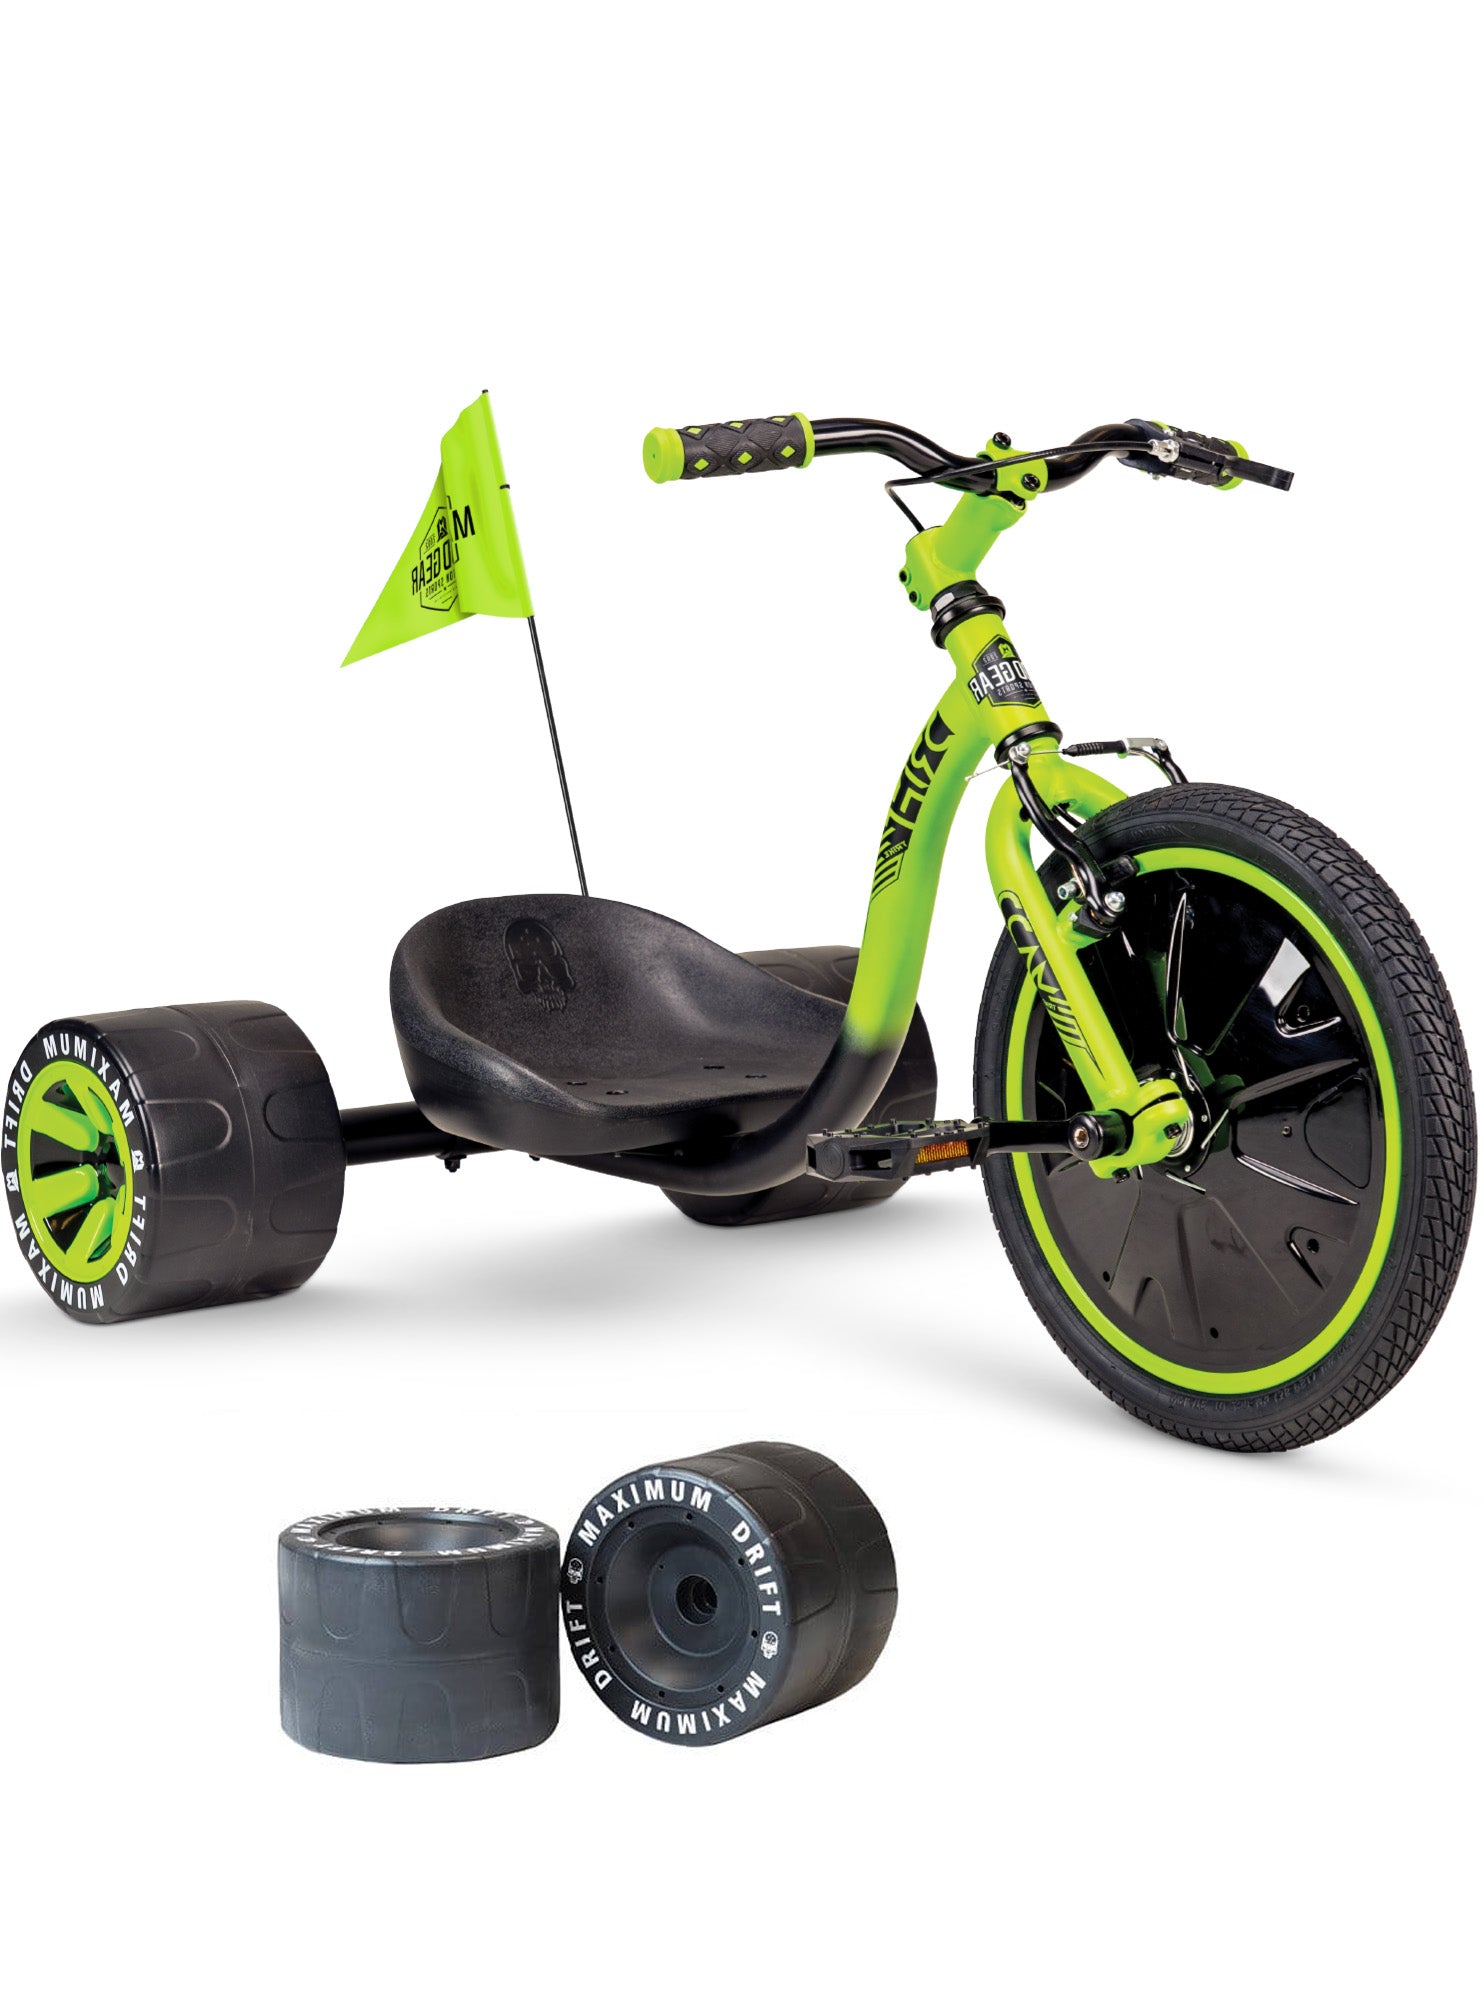 FAQ - Elektro-Drift-Trike für Kinder, Drift-Scooter, bis zu 15km/h,  drosselbar, Hupe, LED-Driftrollen 360